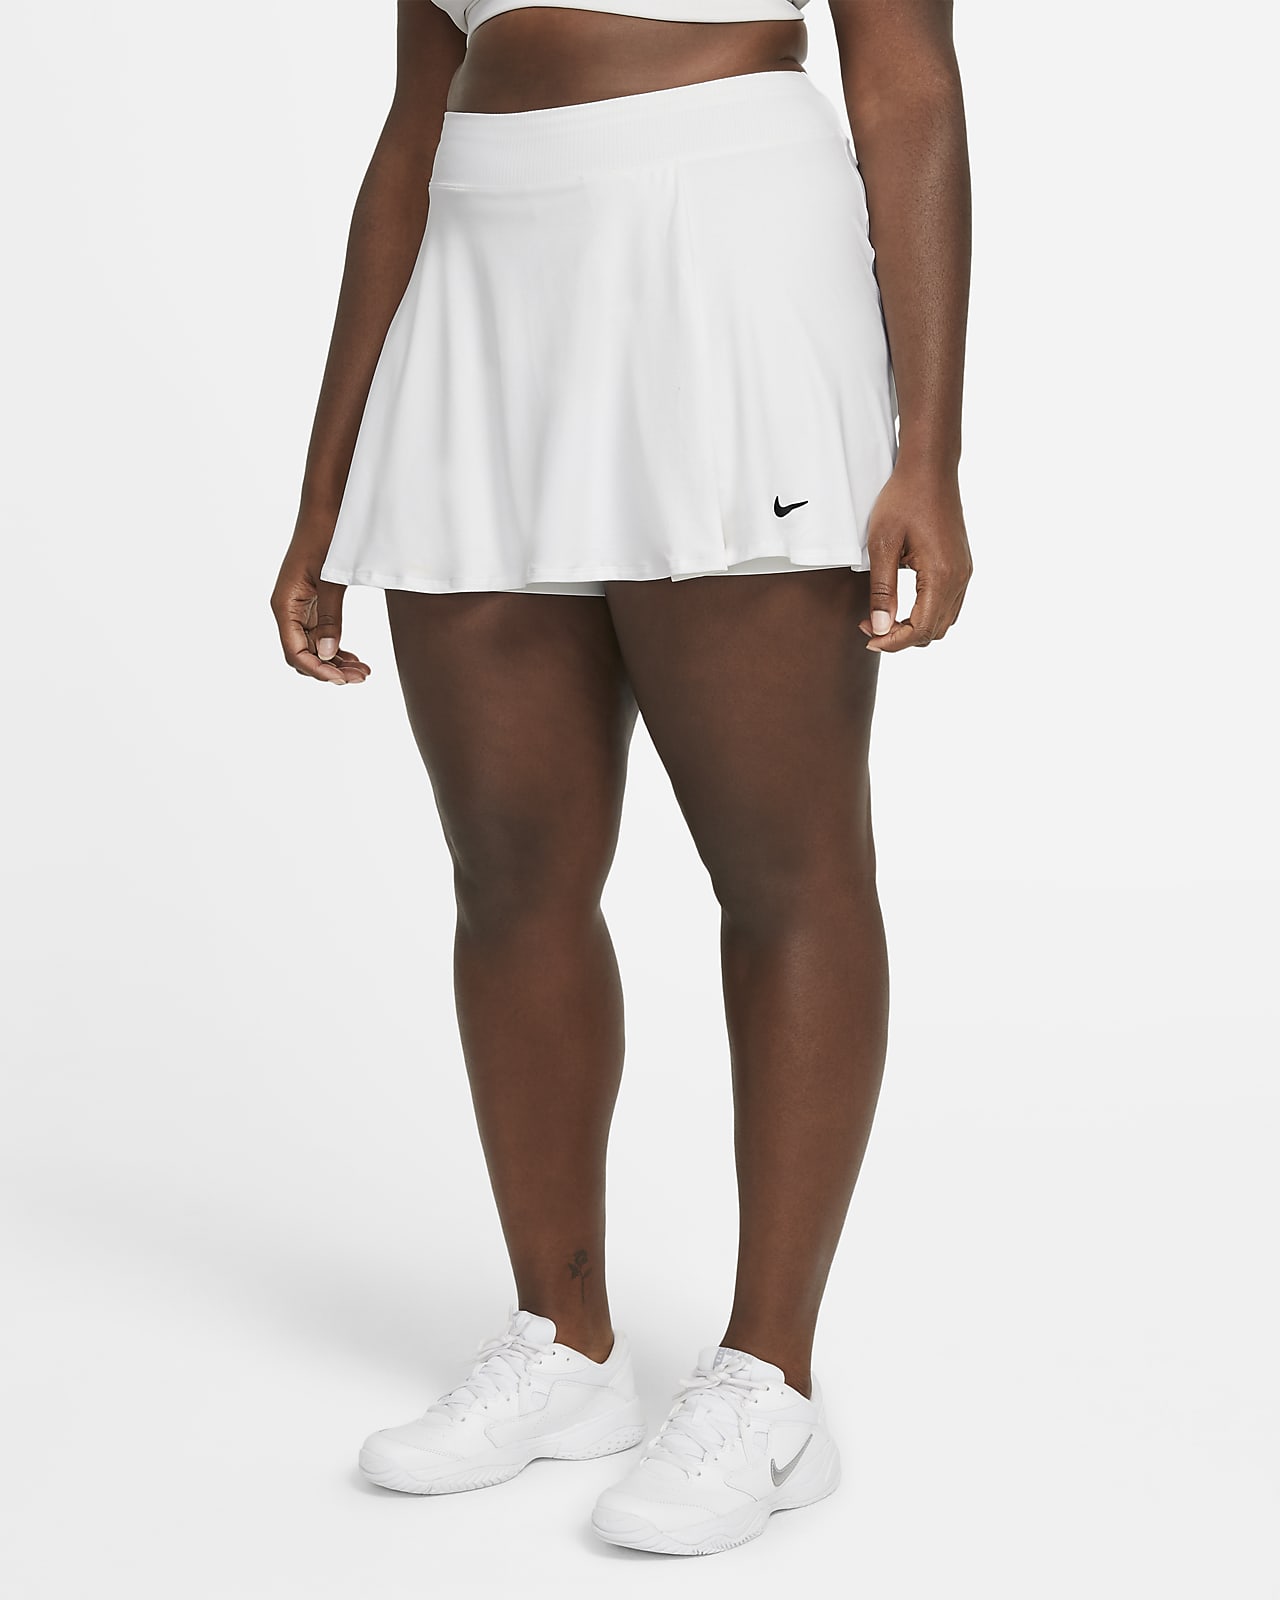 tennis white skirt nike